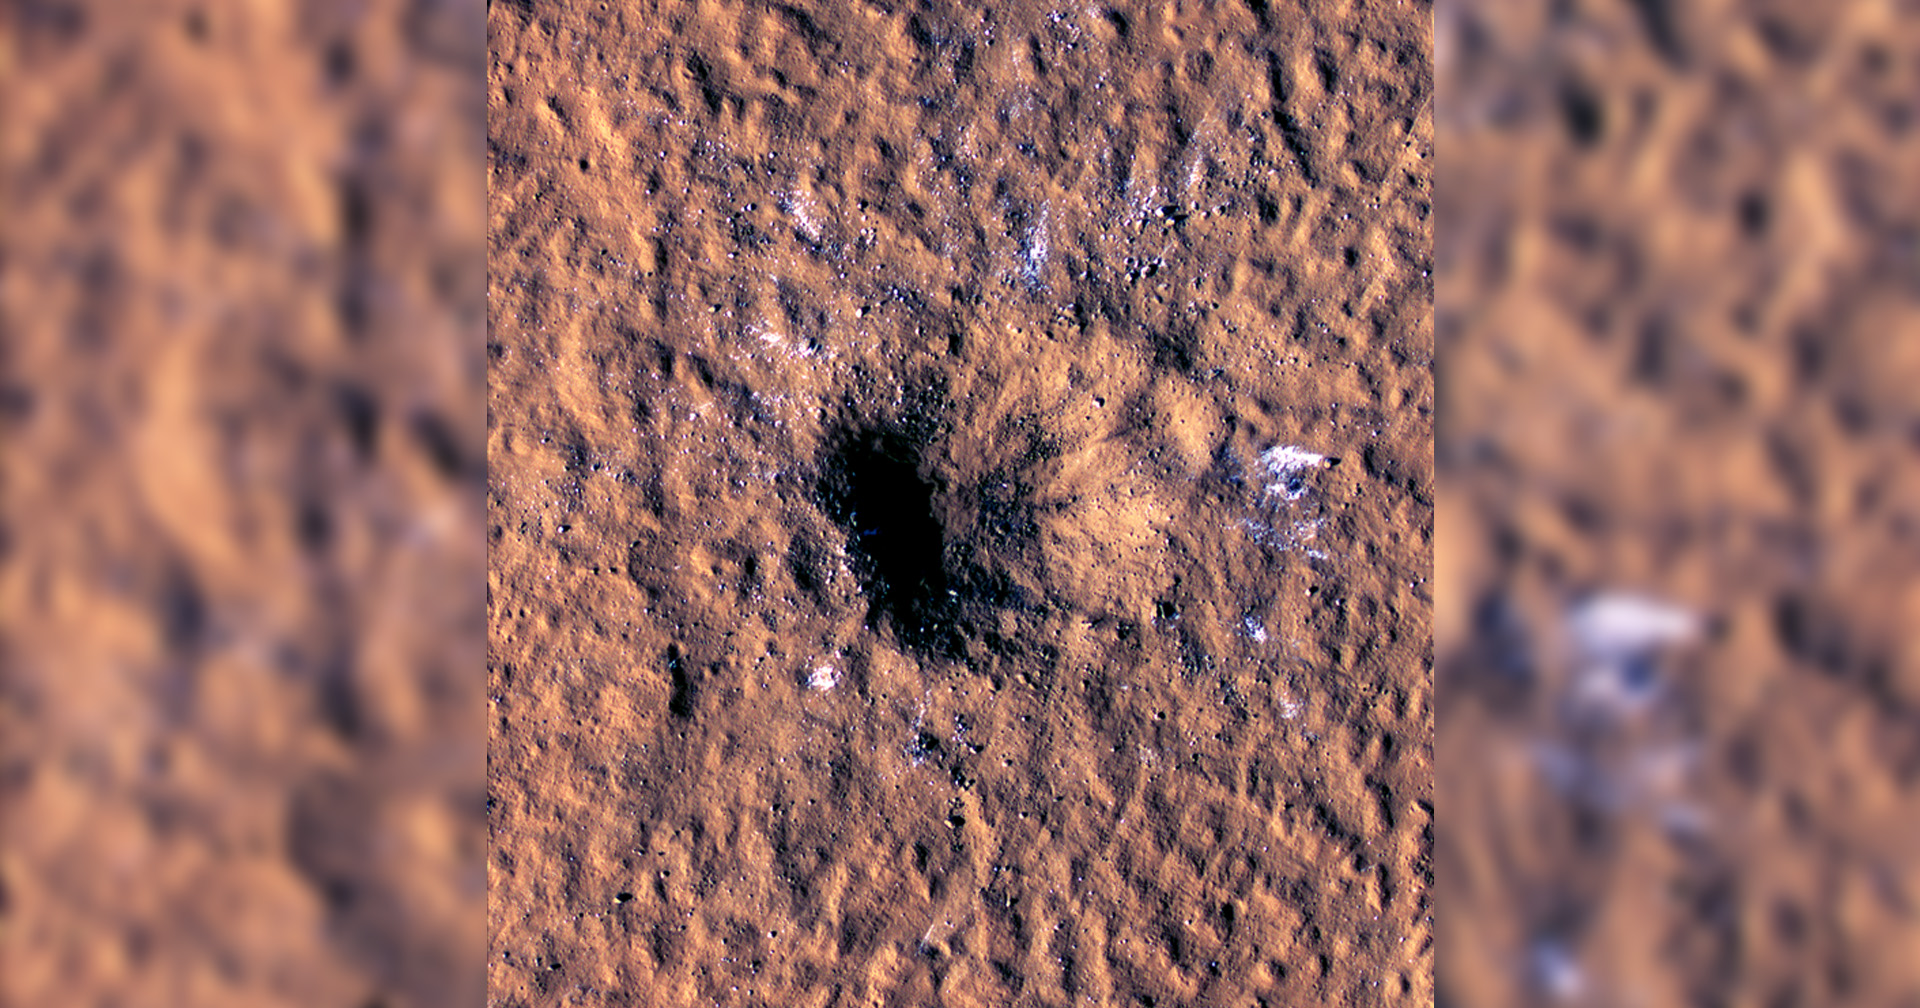 NASA ตรวจพบชั้นน้ำแข็งใกล้เส้นศูนย์สูตรบนดาวอังคาร คาดเกิดจากการชนของอุกกาบาต